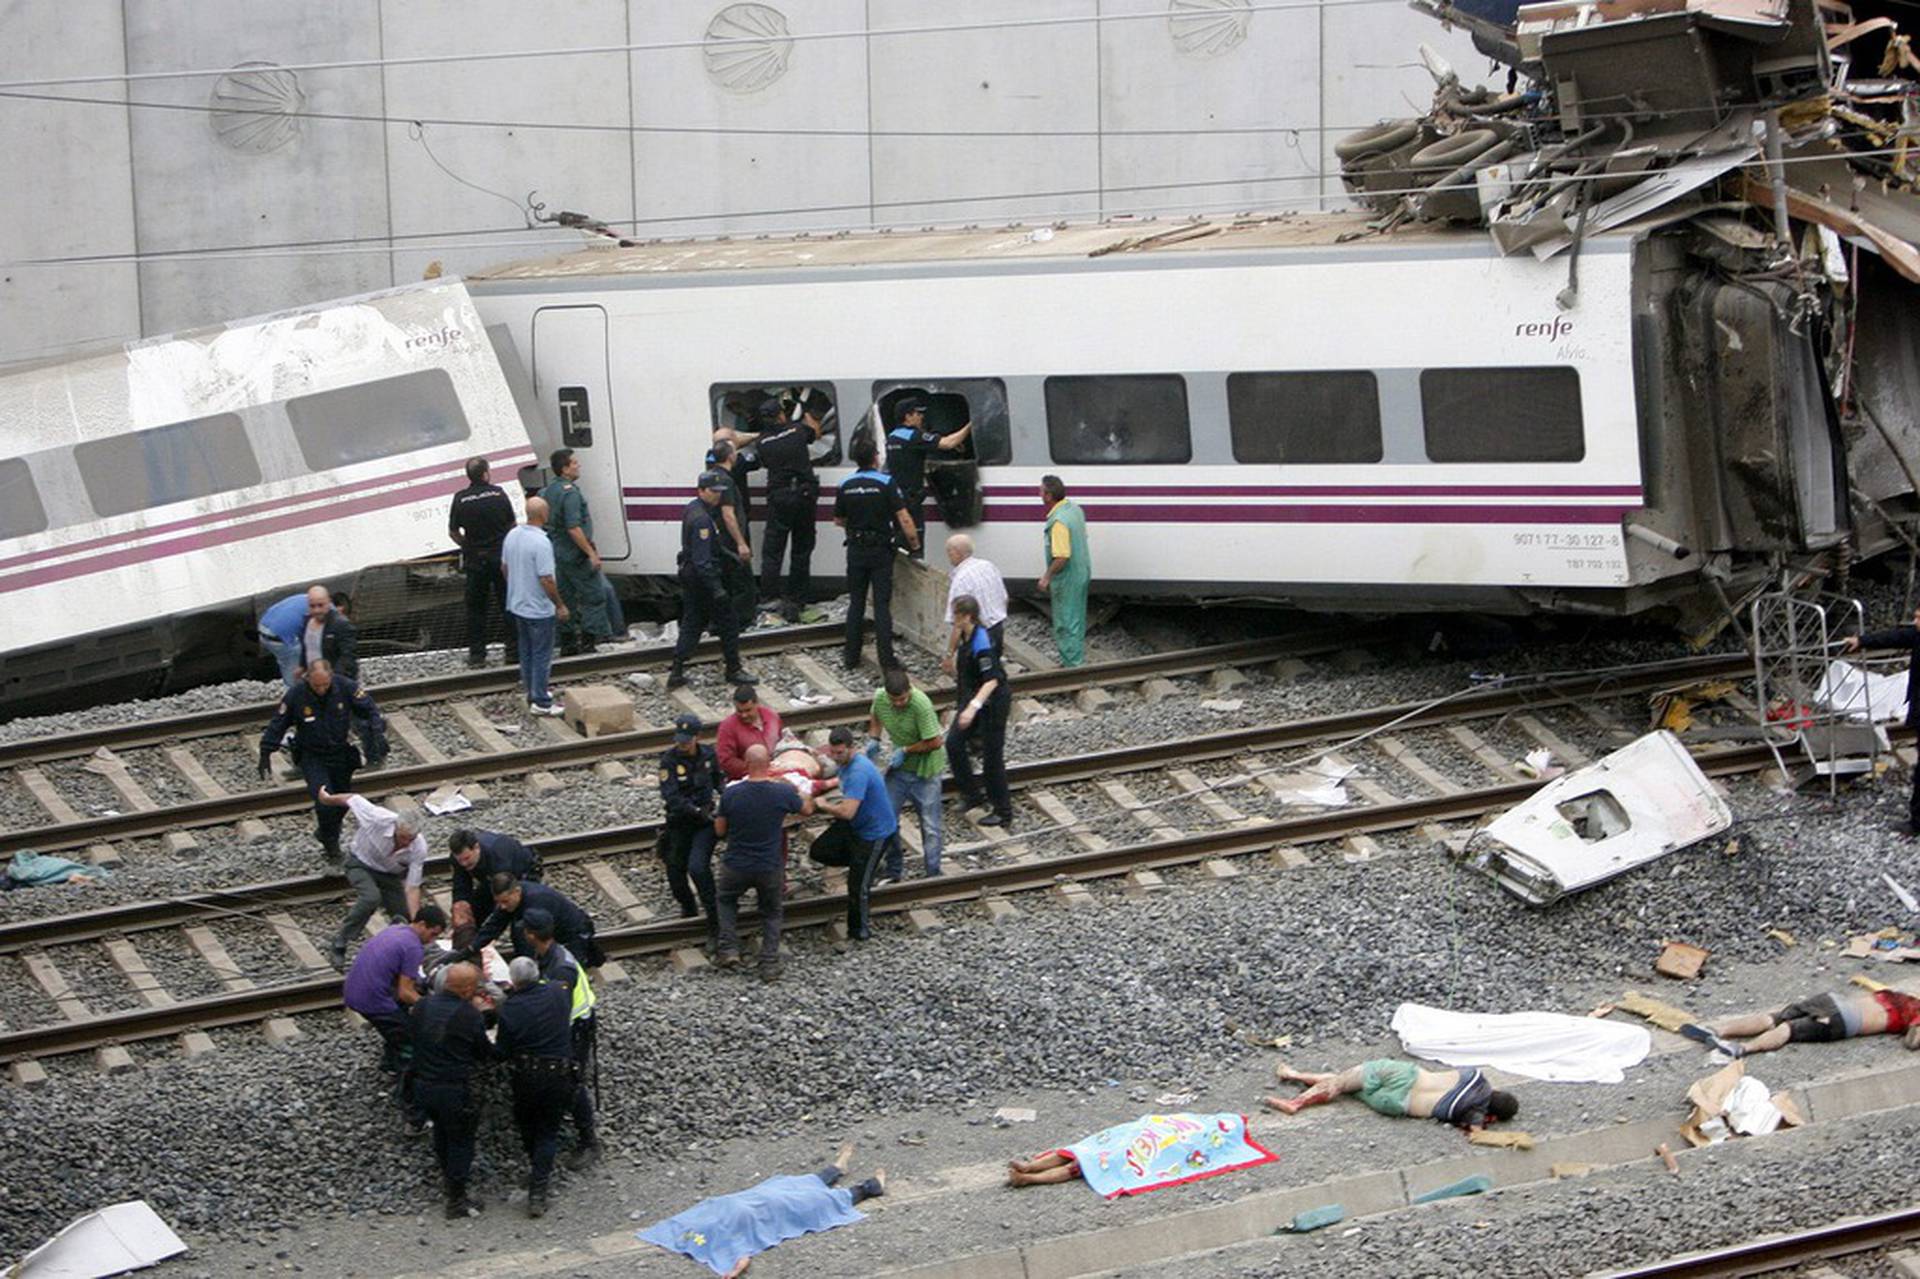 Почему задержали поезд. Крушение поезда в Испании 2013. Крушение поезда Сантьяго де Компостела. Крушение поезда 24 июля 2013 года в Испании.